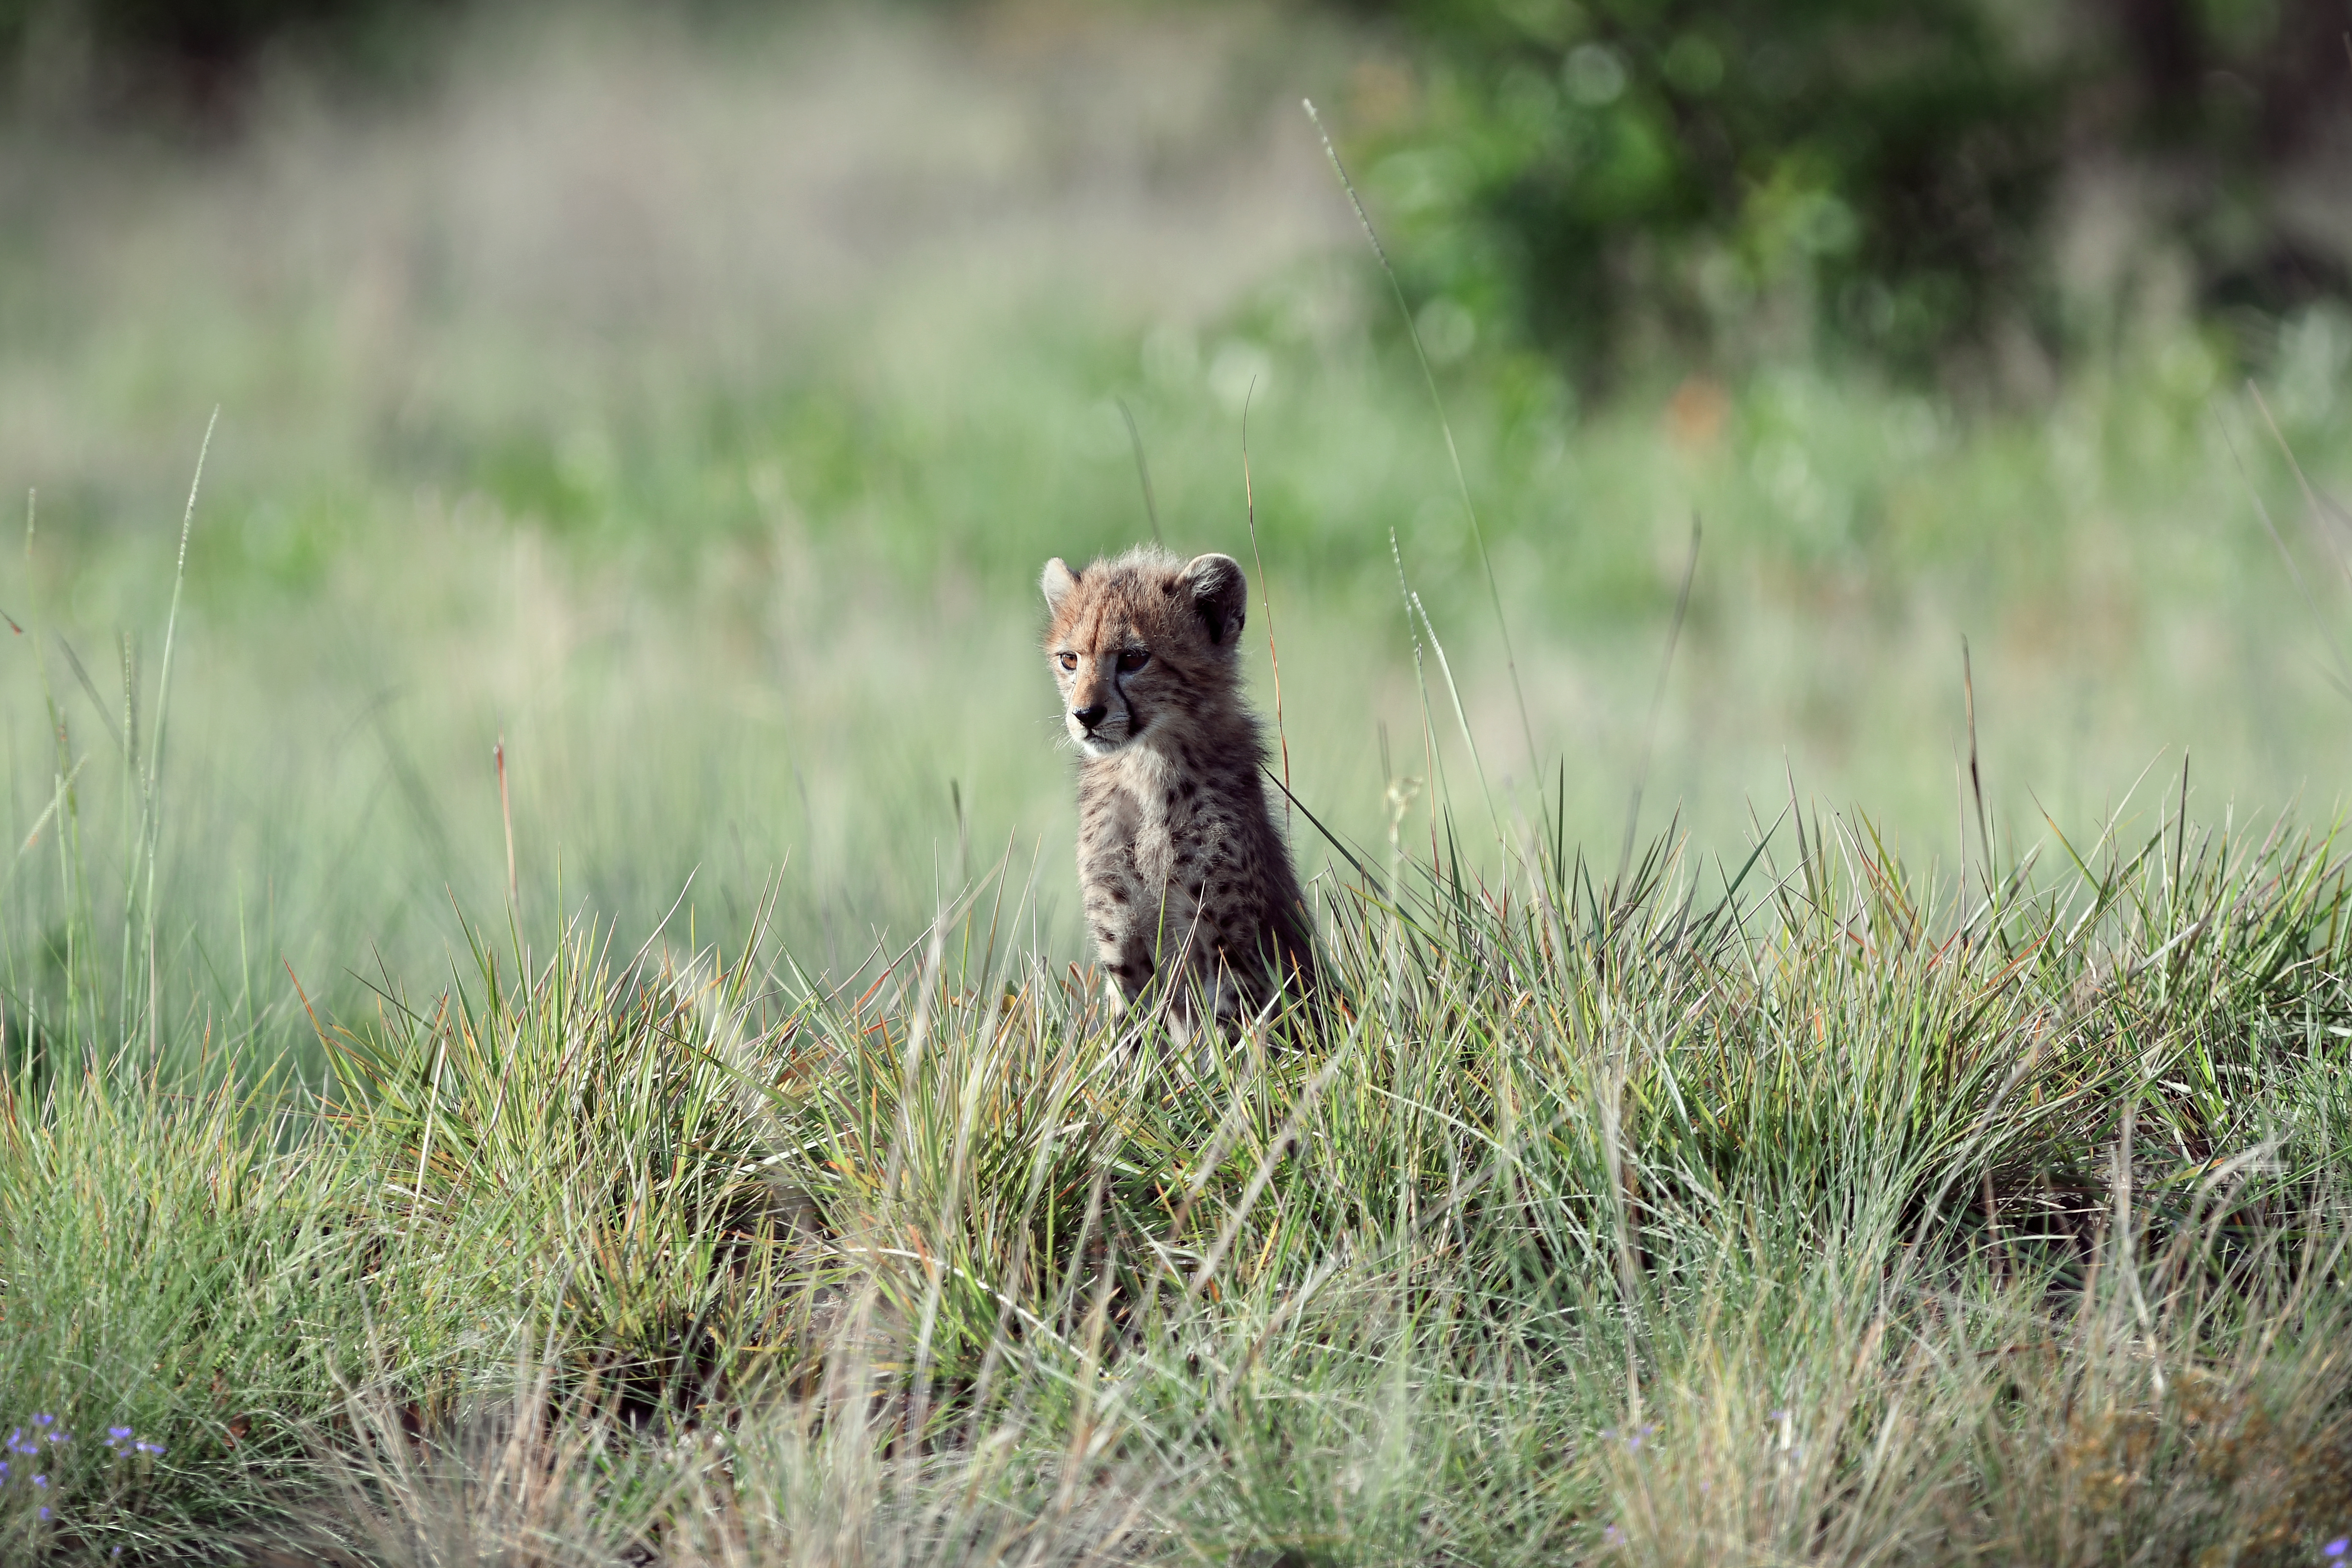 Leopard cub in tall grass